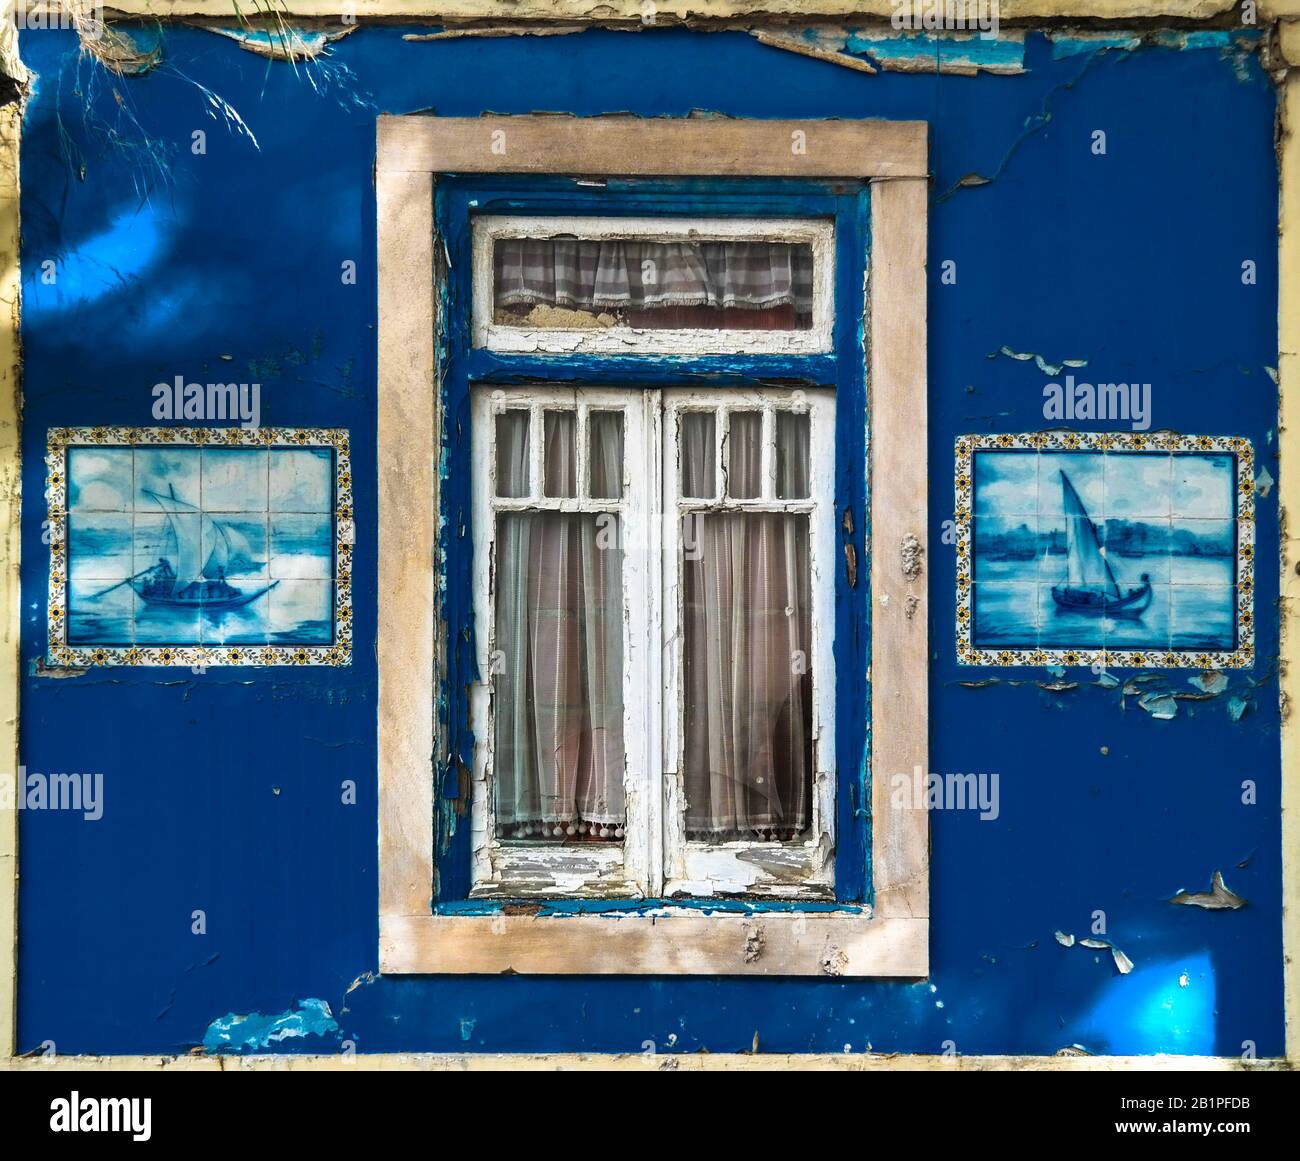 Lisbona. Vecchia finestra con belle immagini di piastrelle. PANTONE CLASSIC BLU 19-4052 Foto Stock